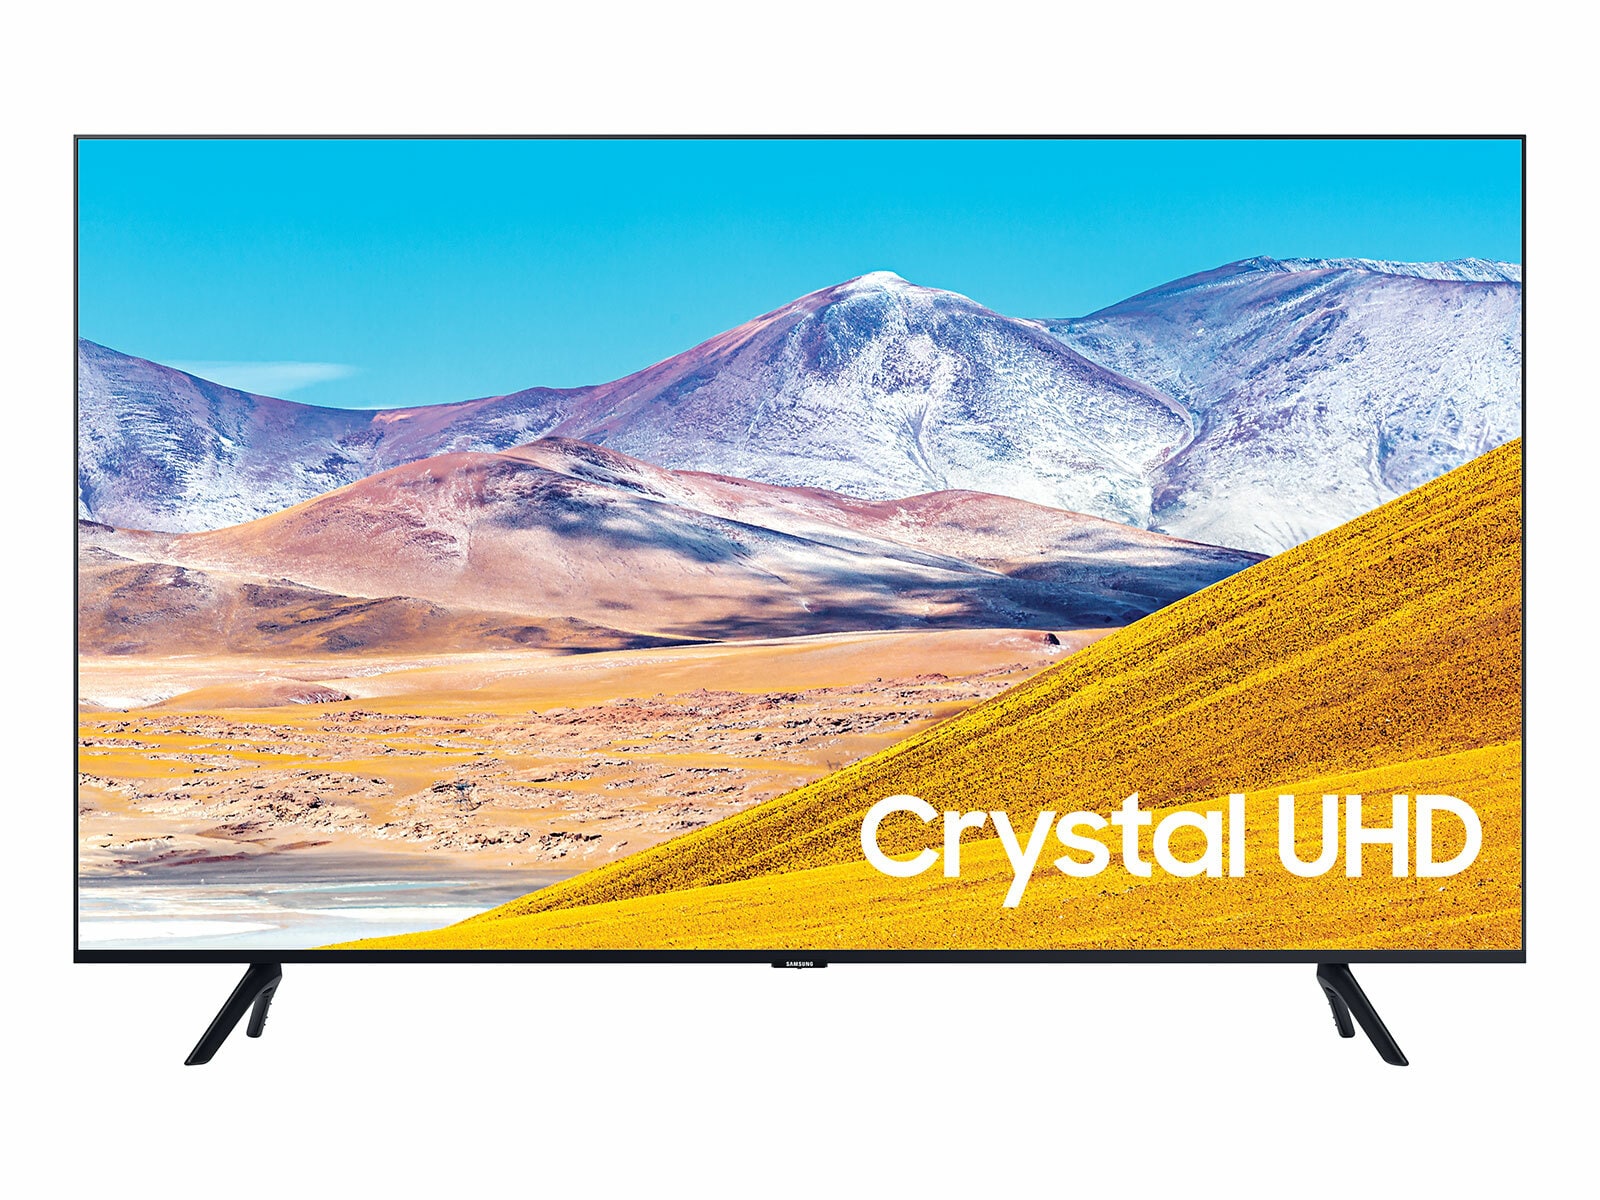 Theseus admire auction Buy Samsung 55 Inch 4K UHD Smart LED TV UA55AU8000, Black Online - Shop  Electronics & Appliances on Carrefour UAE